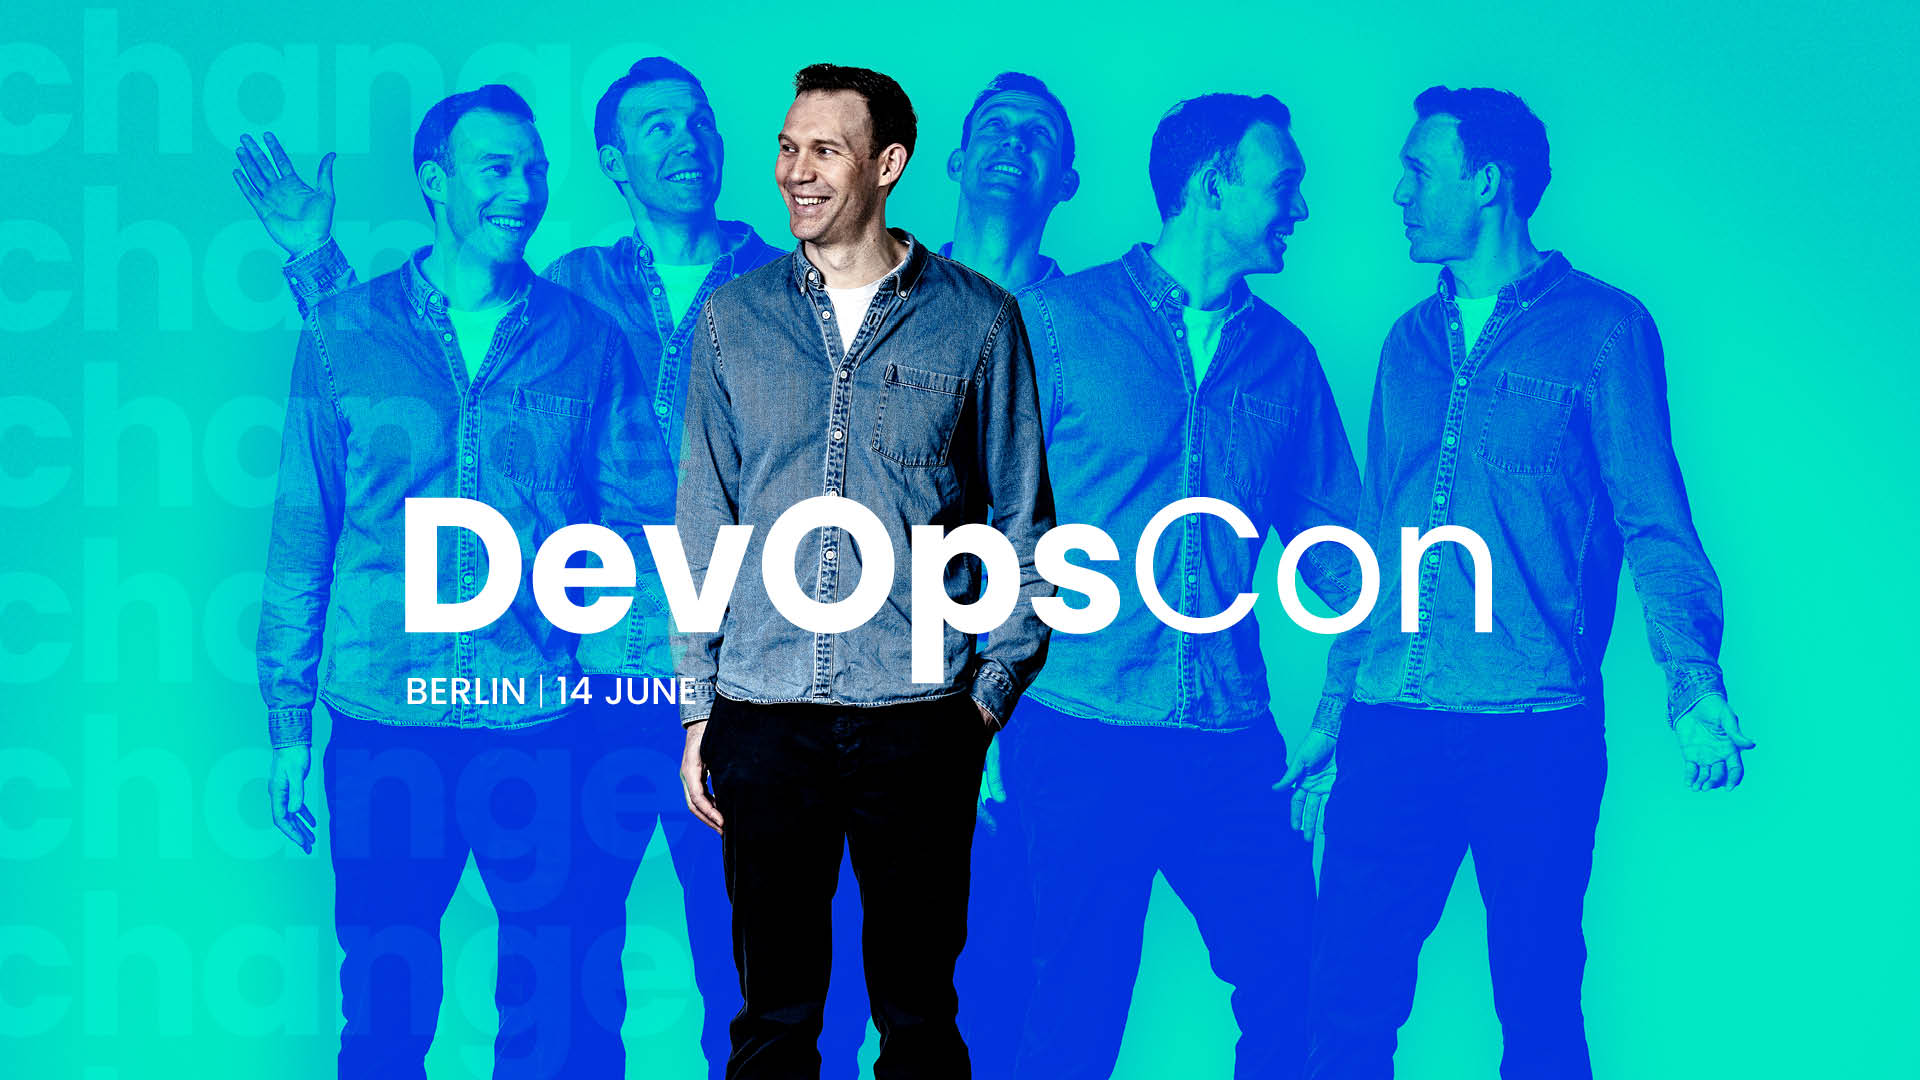 We're heading to DevOps Con Berlin!